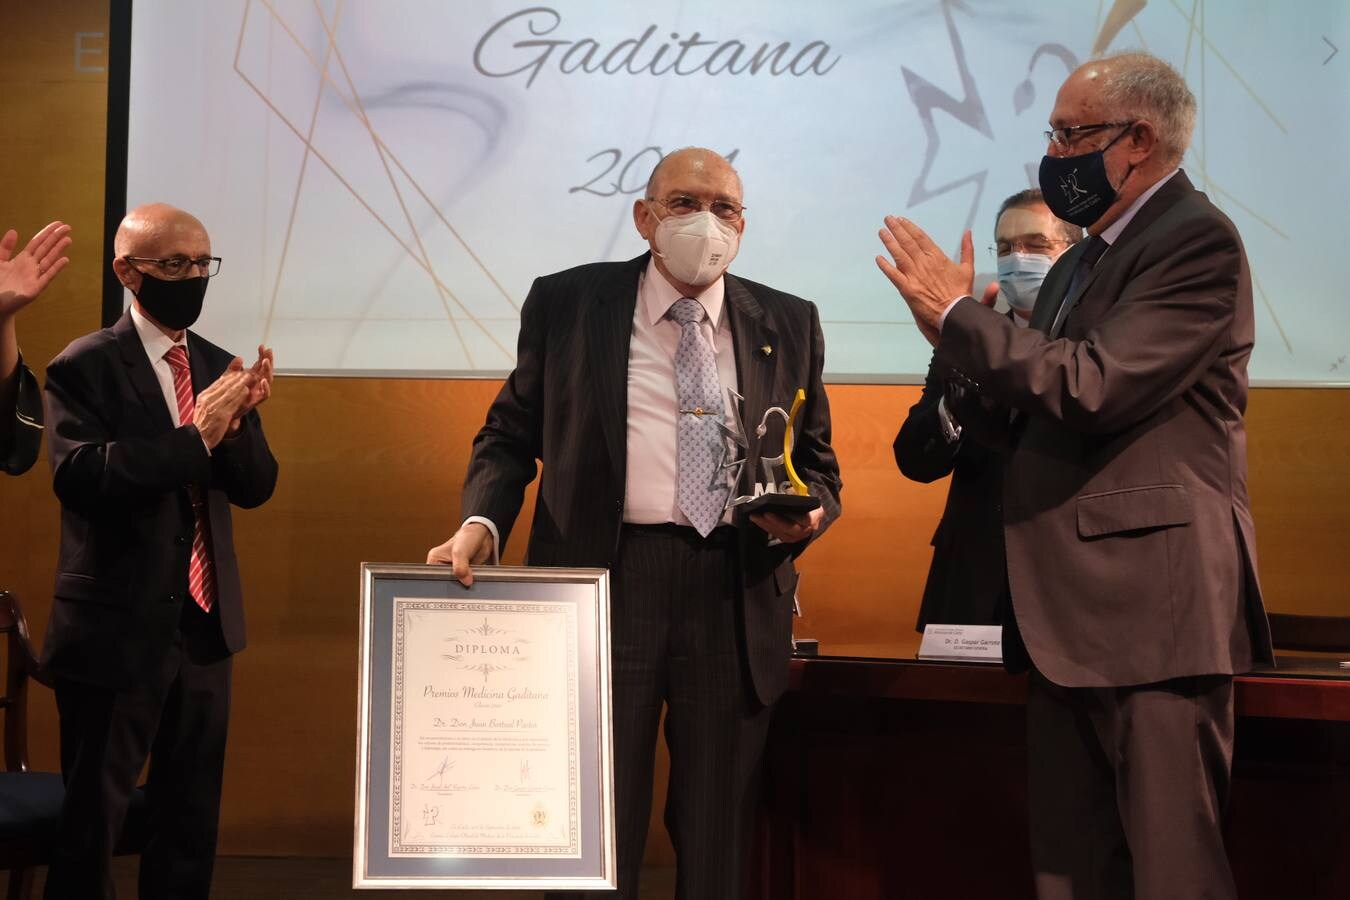 Fotos: Premios Medicina Gaditana 2021